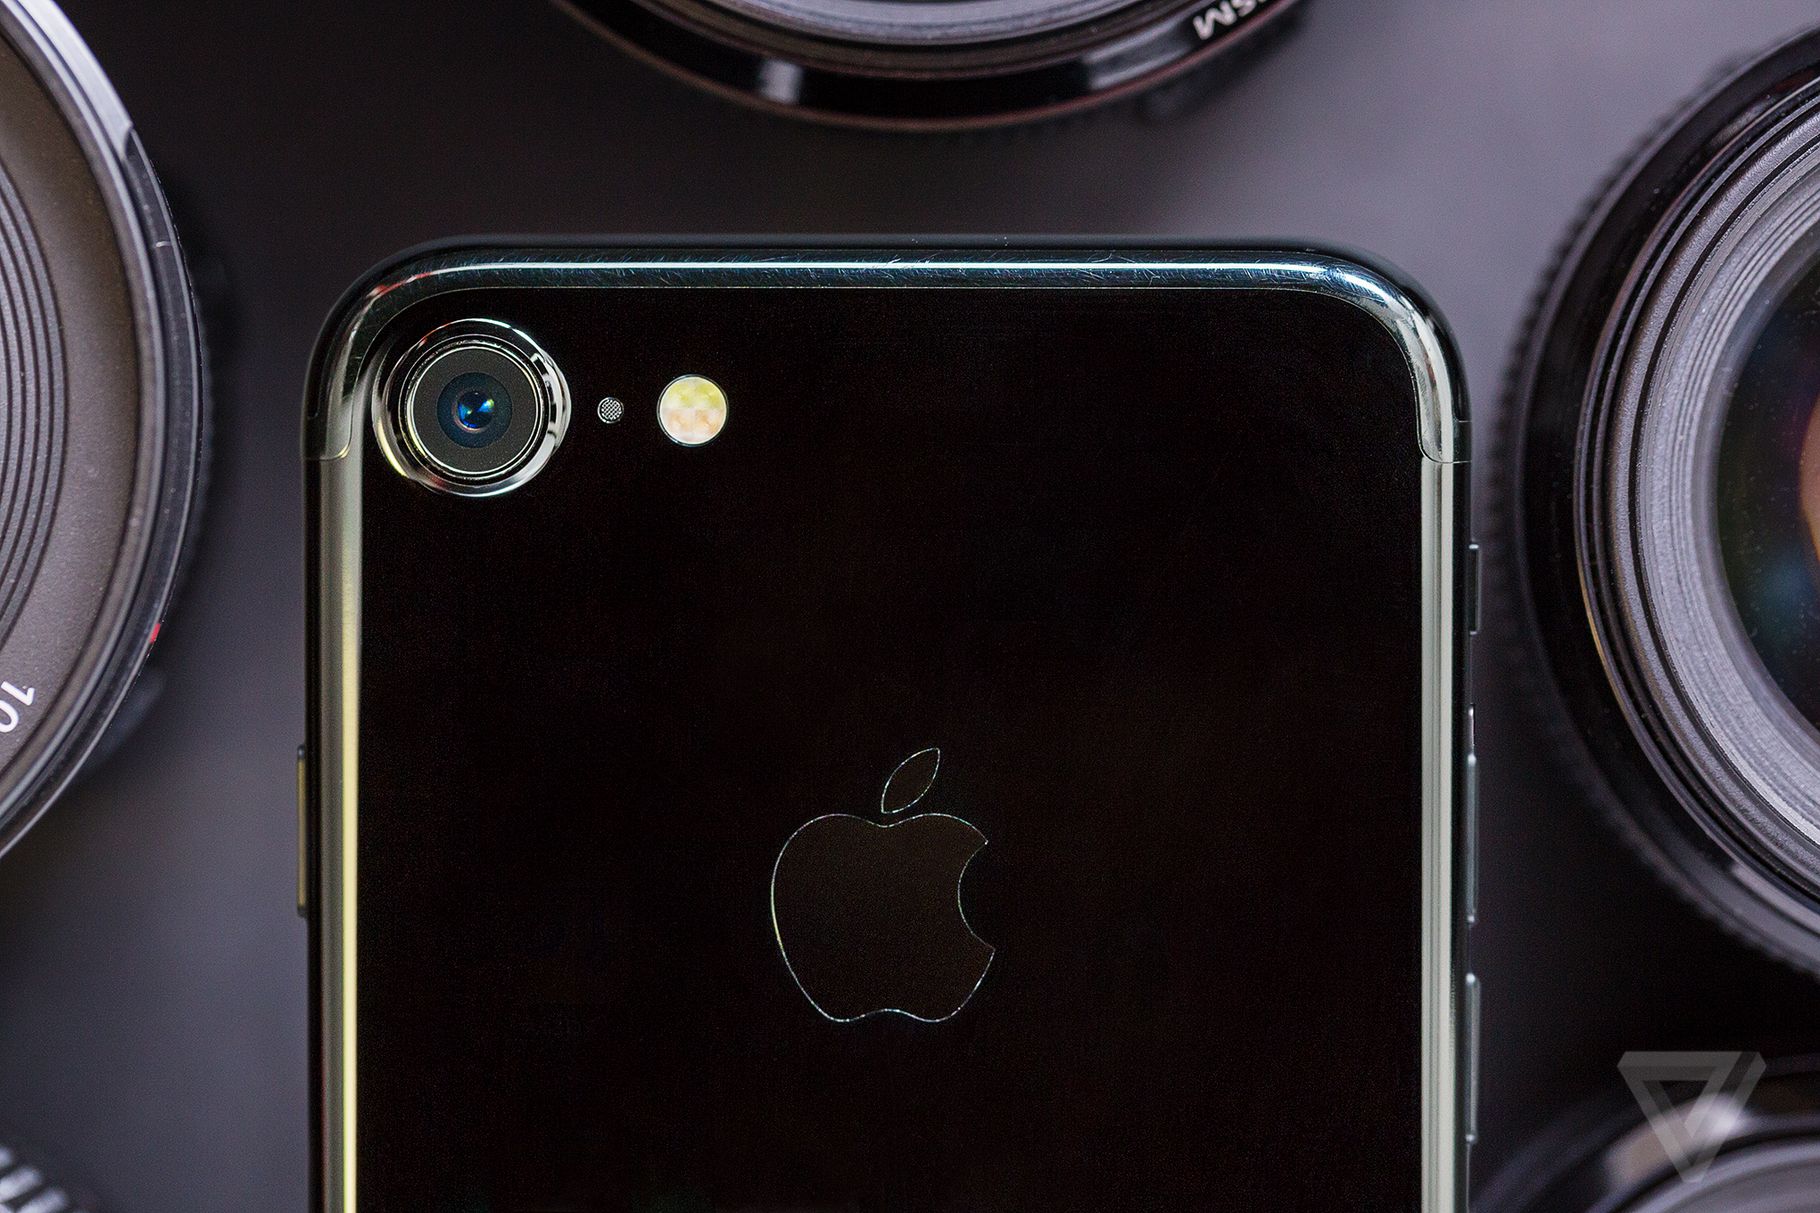 เผยภาพชิ้นส่วนด้านหลัง iPhone รุ่นใหม่มาพร้อมกระจกและกล้องตัวเดียว